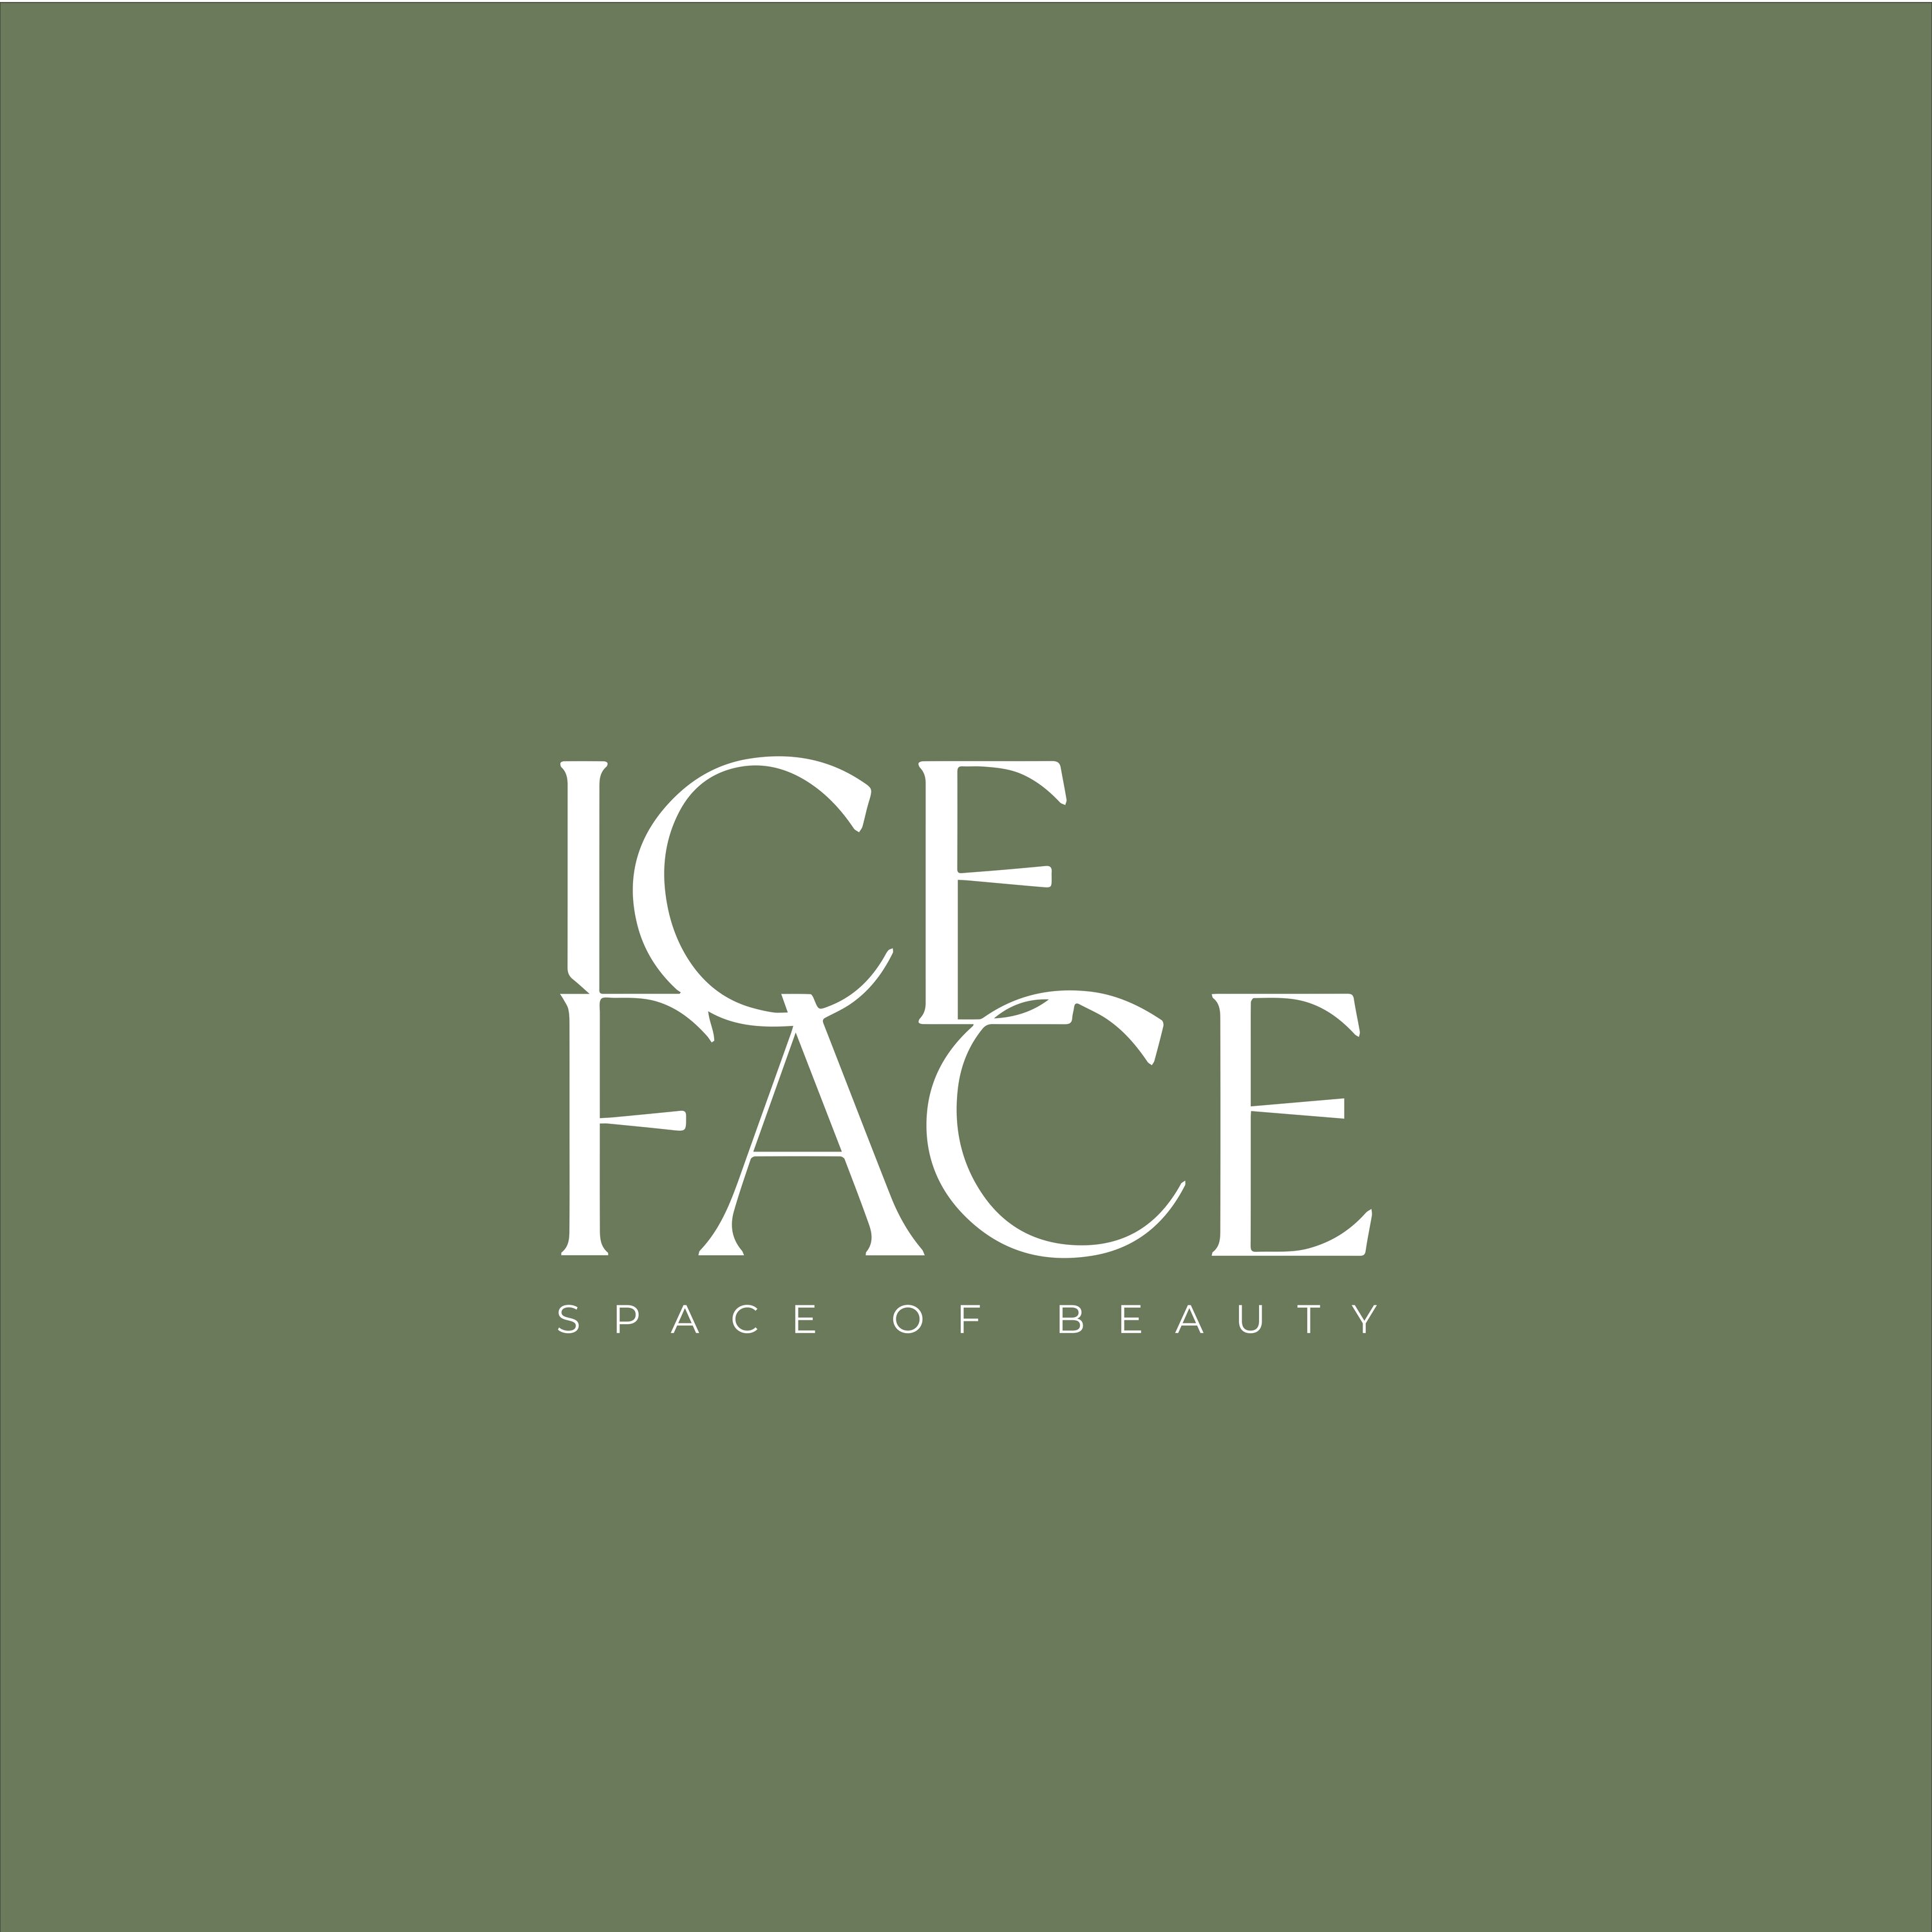 Ice face лого